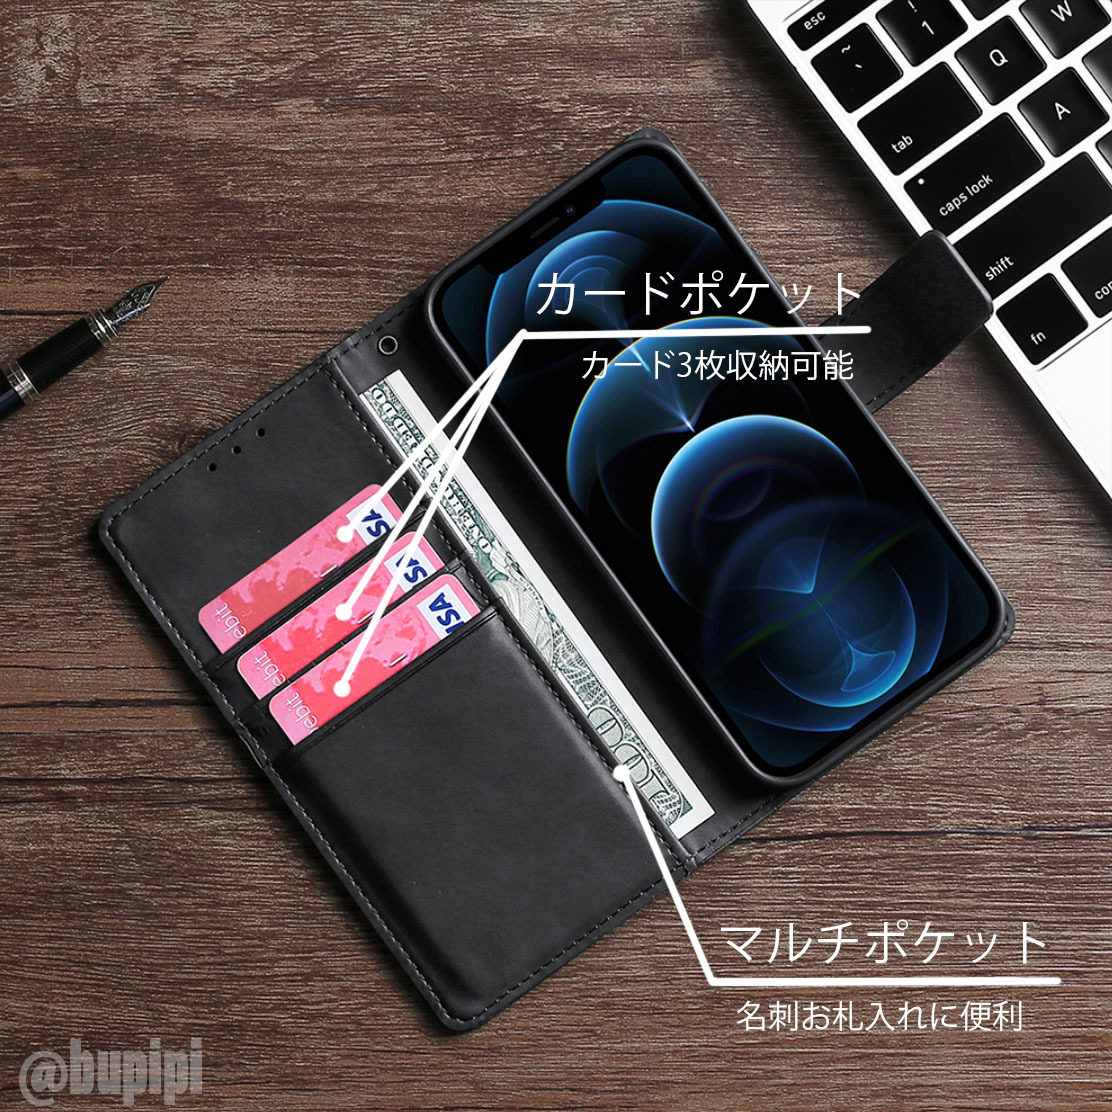 手帳型 スマホケース 高品質 レザー iphone X XS 対応 本革調 ブラック カバー クロコダイル モチーフ